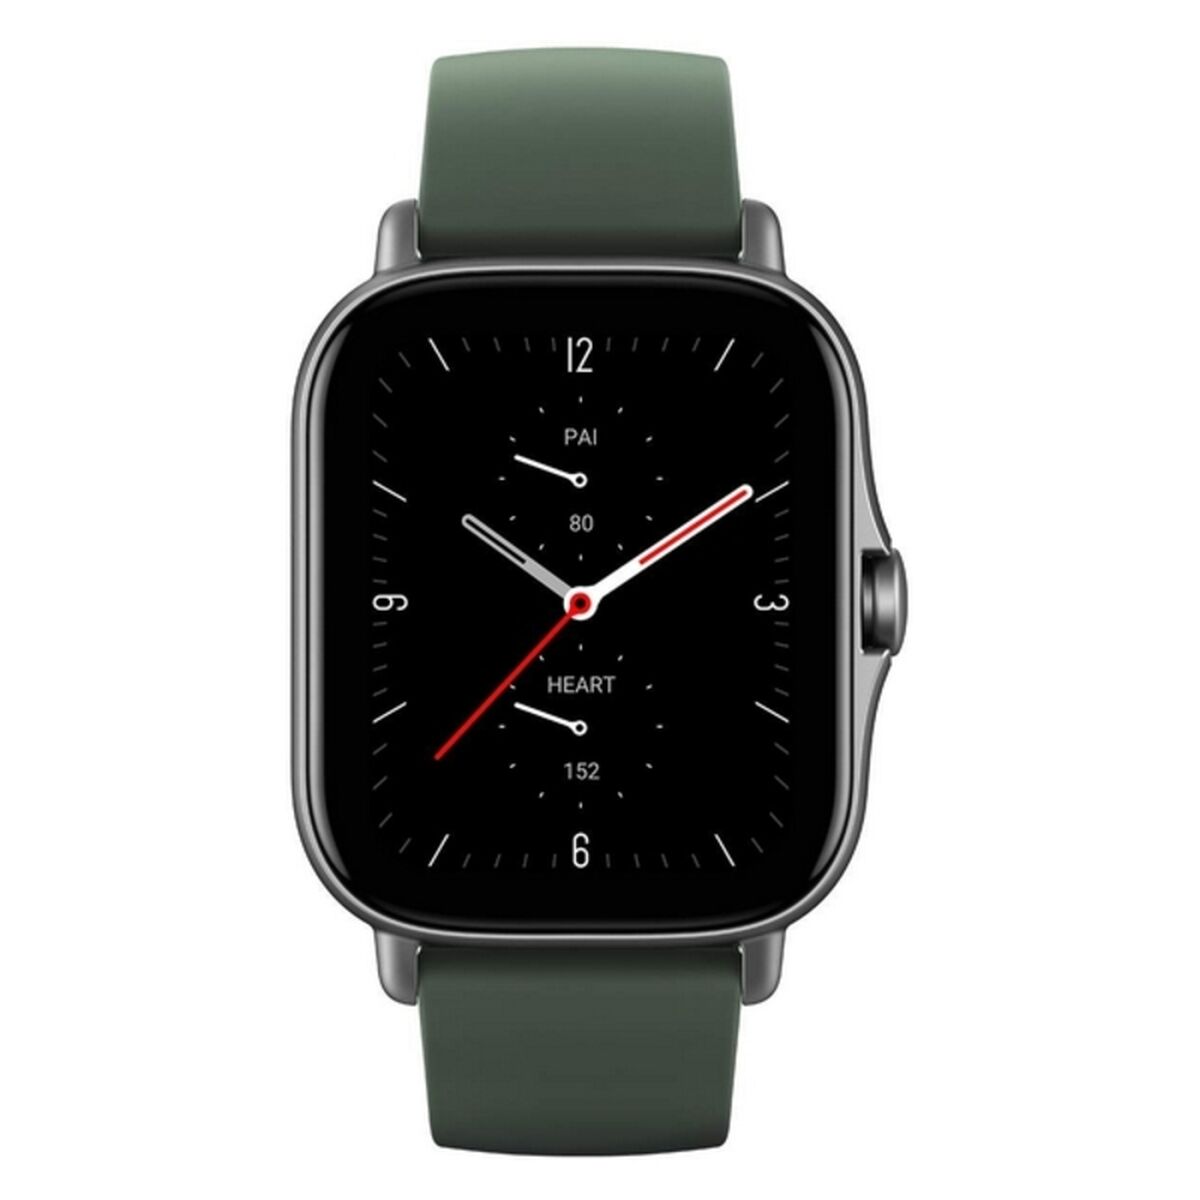 Smartwatch Amazfit GTS 2e 1,65" AMOLED 246 mAh Green